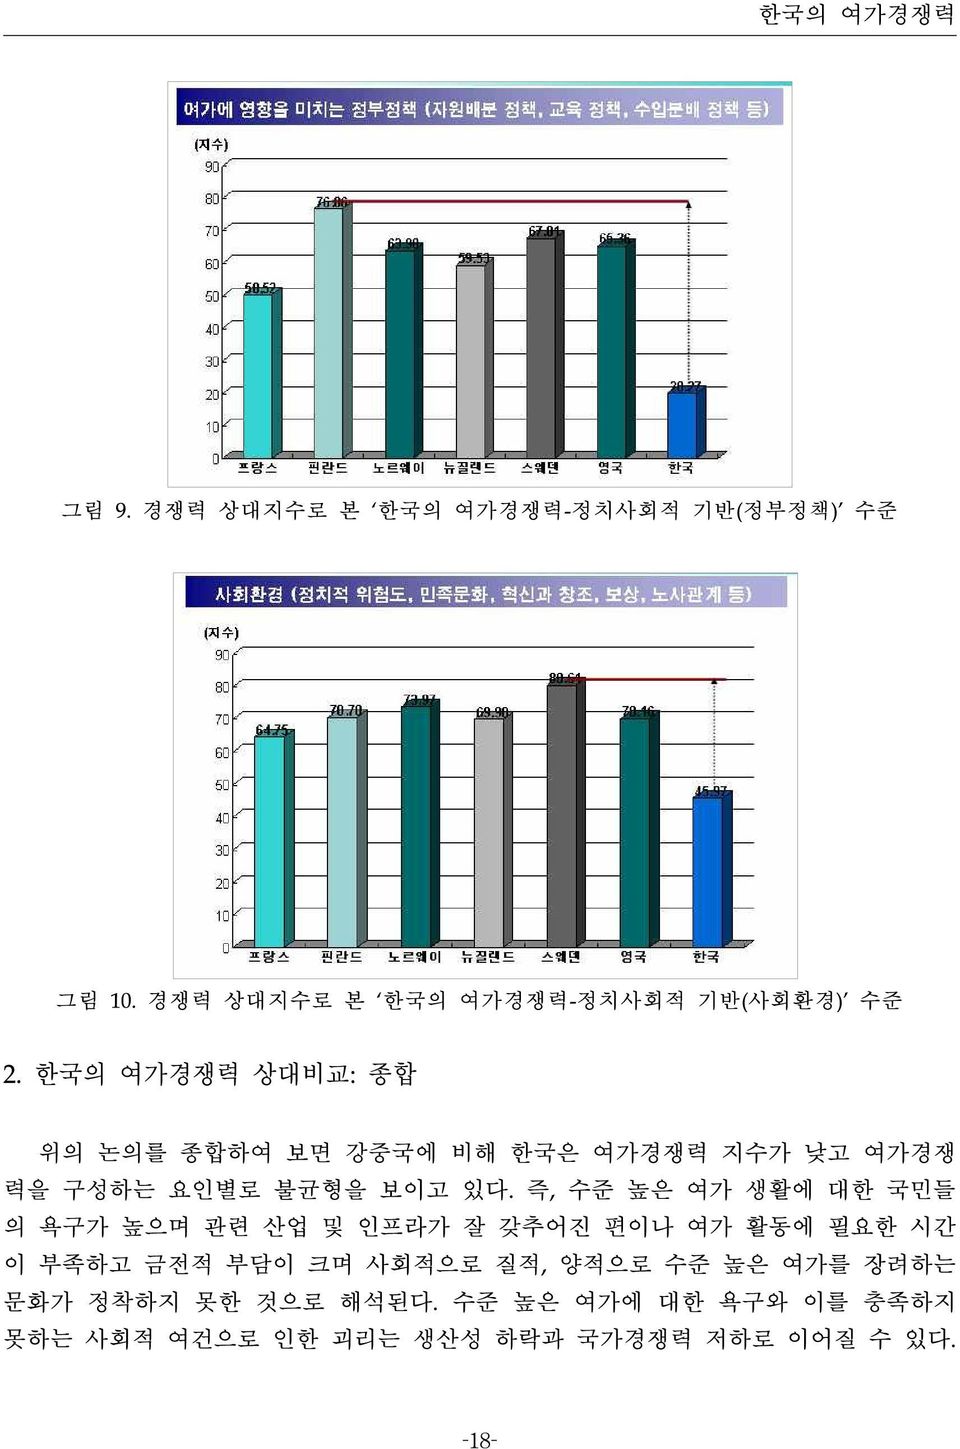 한국의 여가경쟁력 상대비교: 종합 위의 논의를 종합하여 보면 강중국에 비해 한국은 여가경쟁력 지수가 낮고 여가경쟁 력을 구성하는 요인별로 불균형을 보이고 있다.